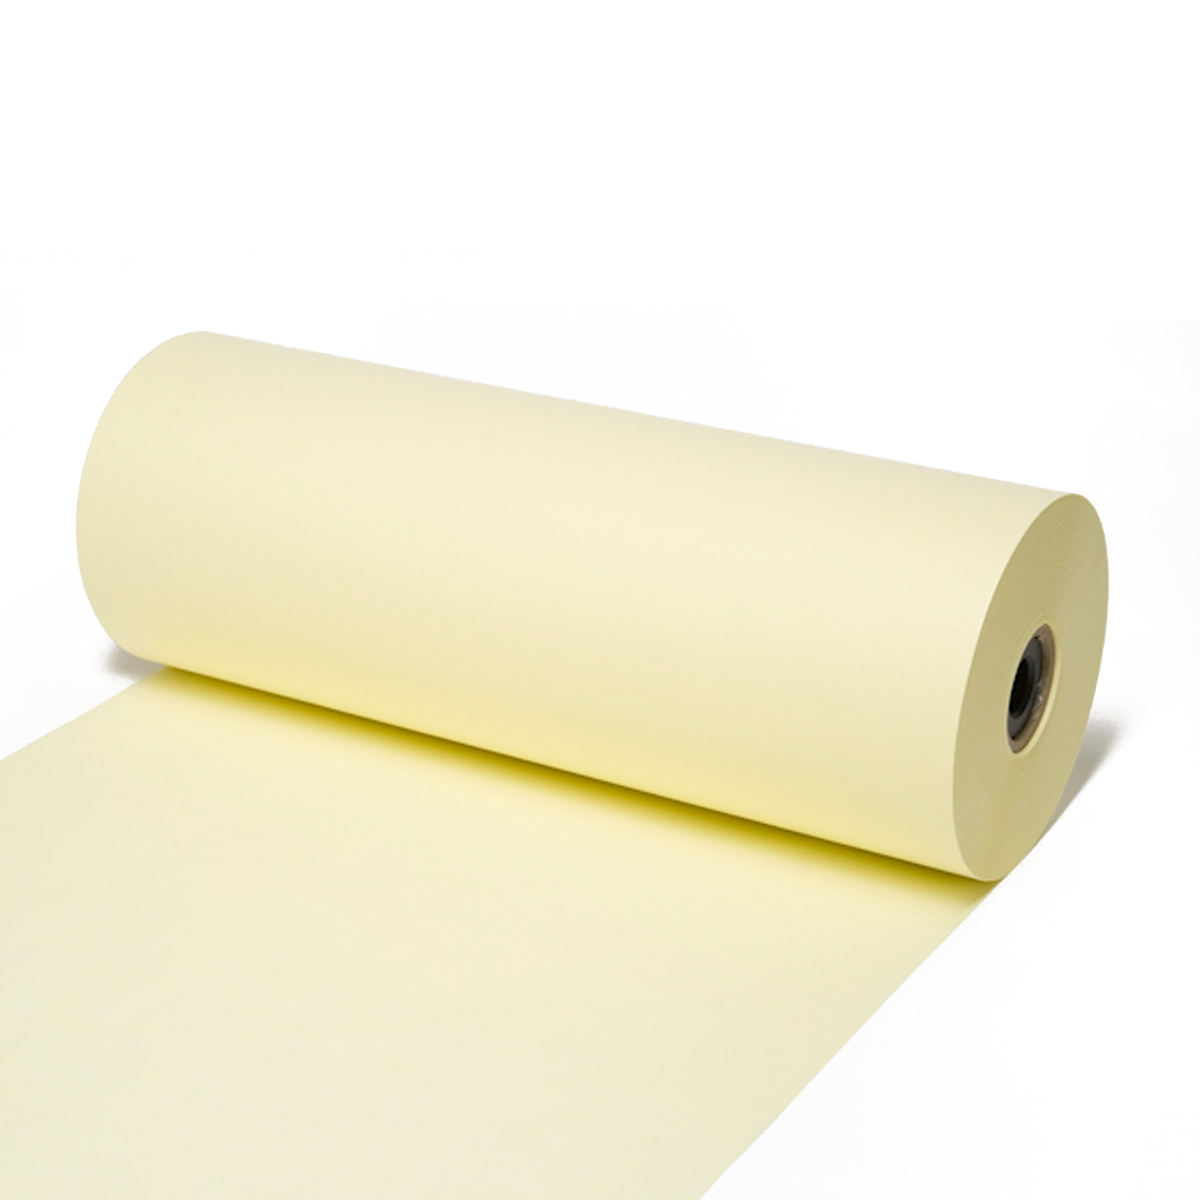 Seidenpapier Creme, 50 / 75 cm breit, ca. 500 Meter / Rolle